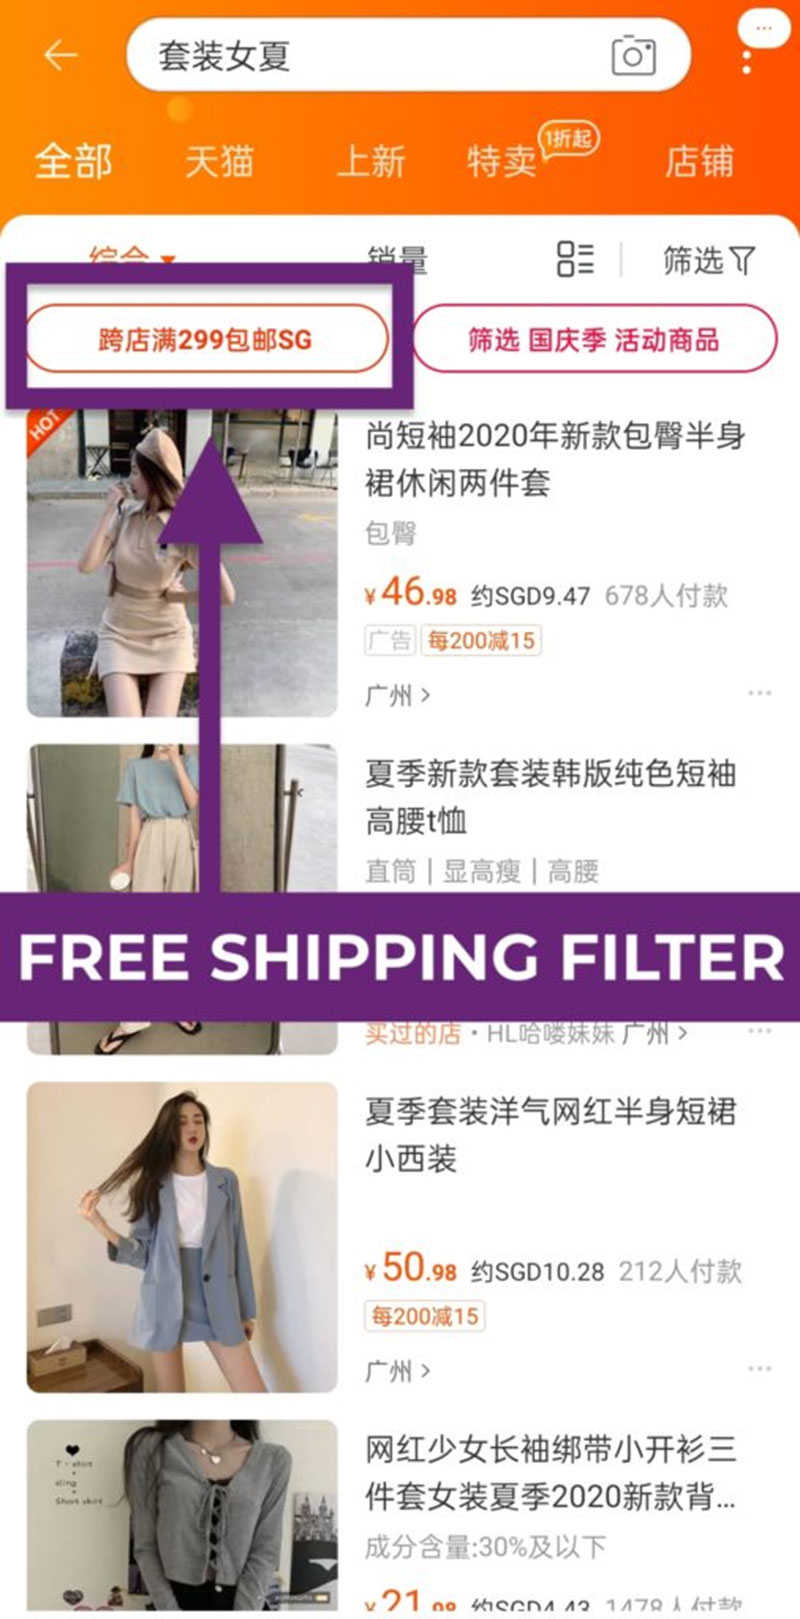 Trên Taobao có rất nhiều mã freeship nội địa